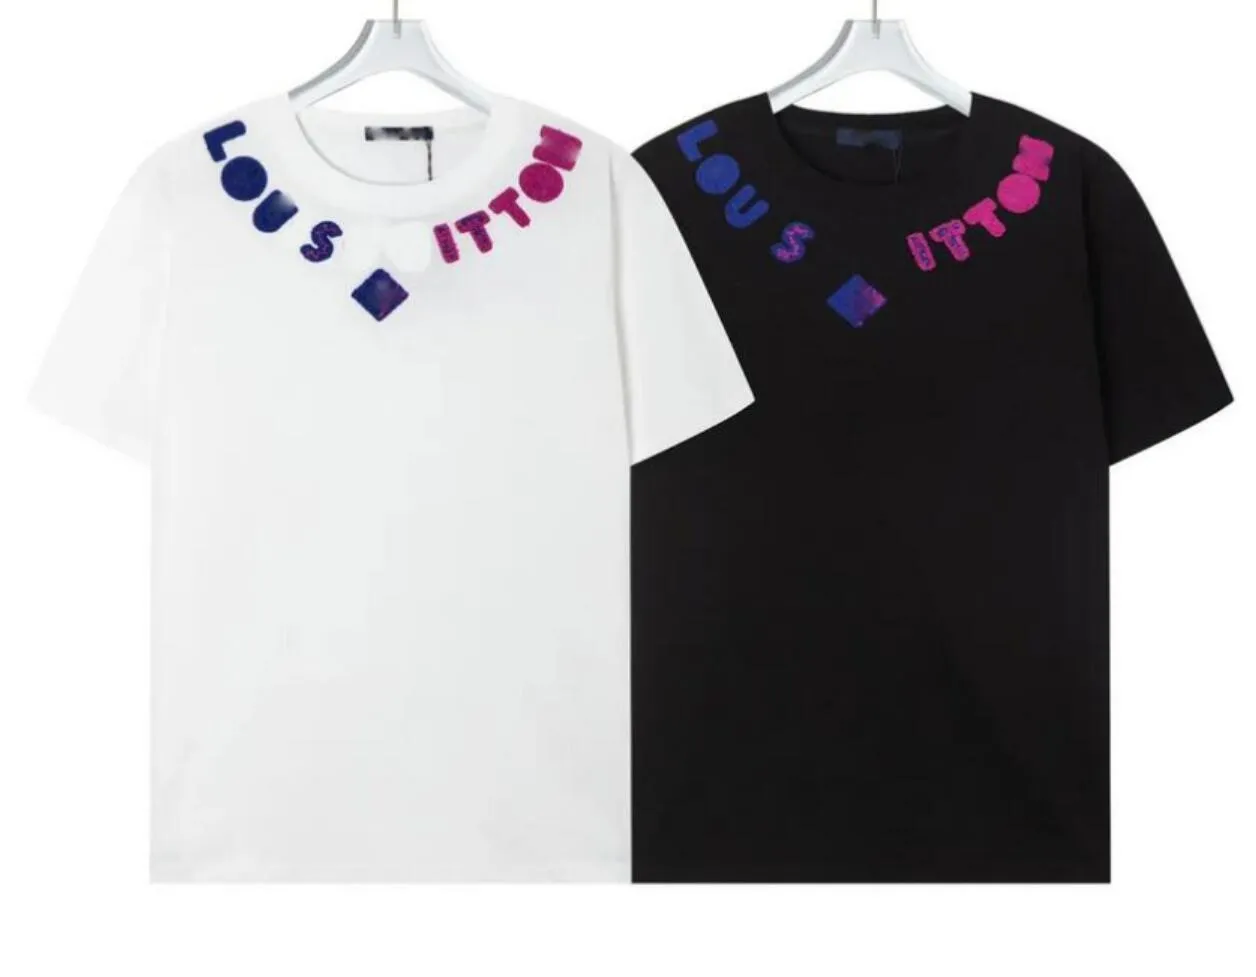 Designerski koszulka męska unisex moda damska luźna bawełniana bawełniana krótkie rękaw L-literowa koszulka Hip Hop Street Wear v T-shirt Casual Top T-shirt